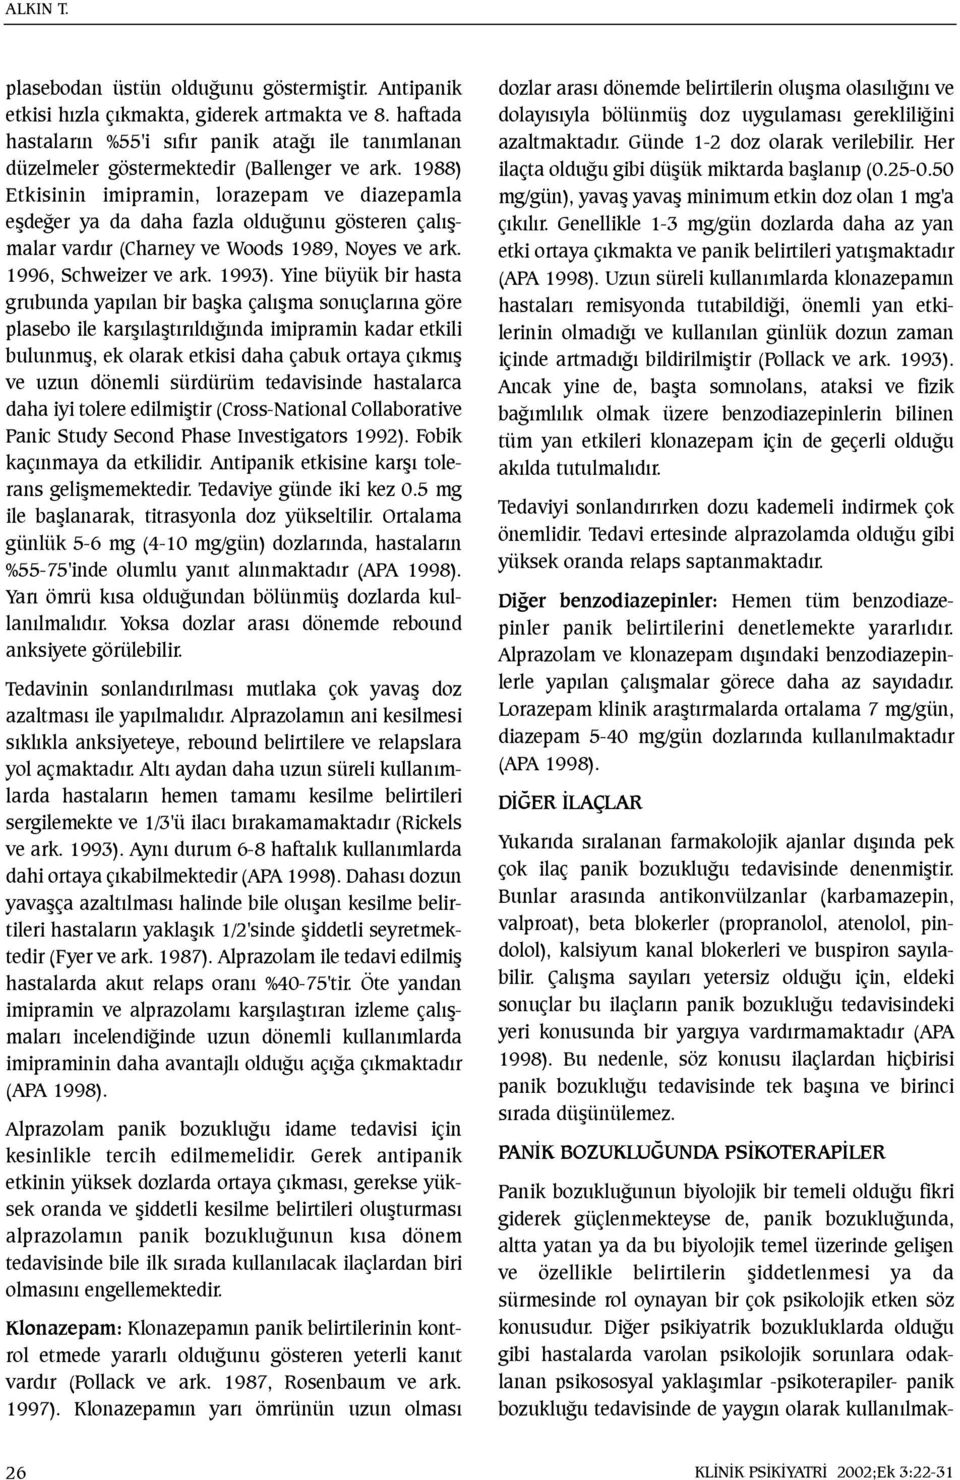 1988) Etkisinin imipramin, lorazepam ve diazepamla eþdeðer ya da daha fazla olduðunu gösteren çalýþmalar vardýr (Charney ve Woods 1989, Noyes ve ark. 1996, Schweizer ve ark. 1993).